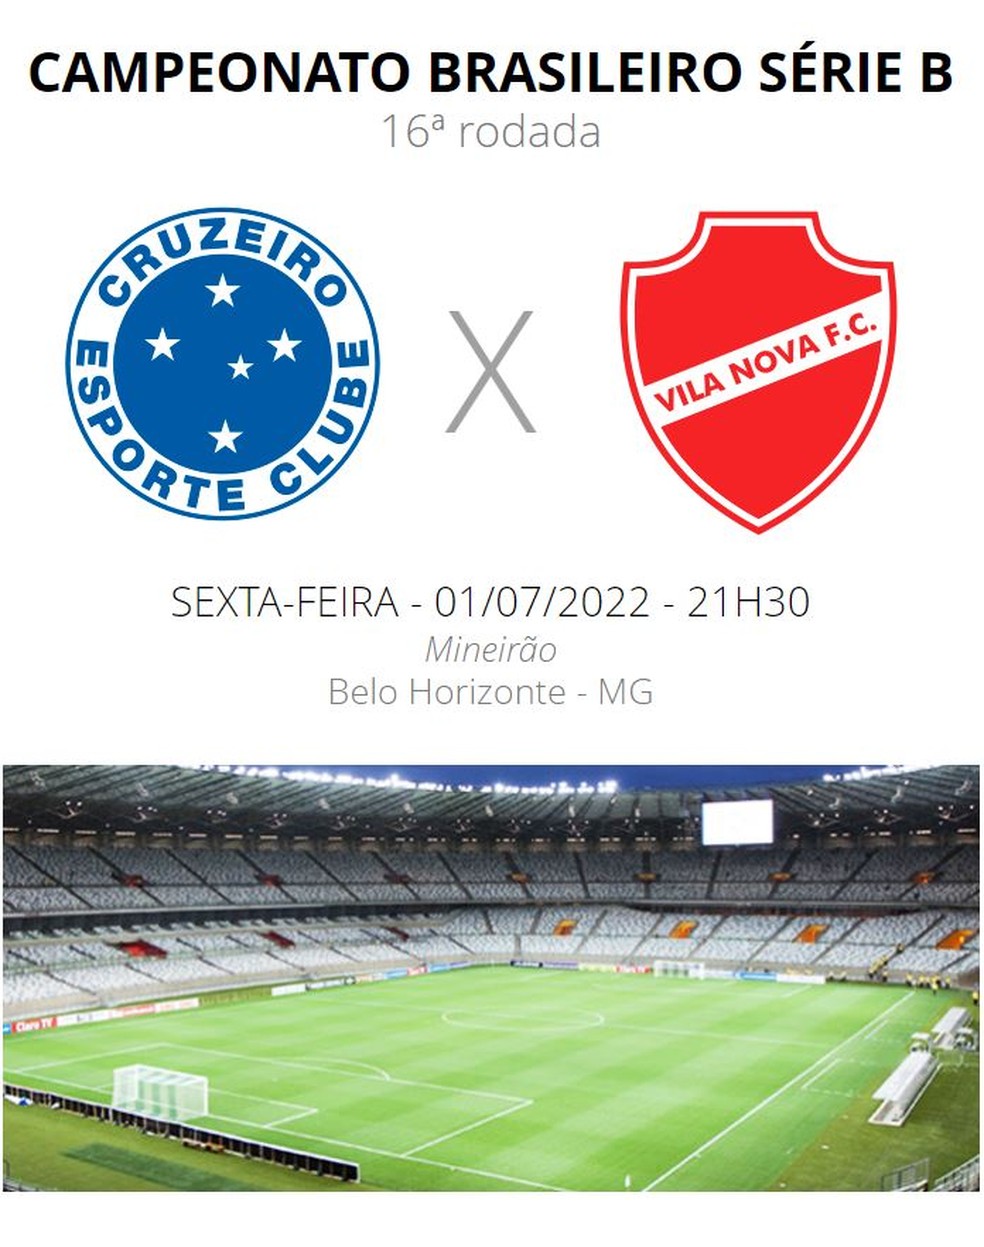 Veja os próximos jogos do Cruzeiro após a goleada sobre o Villa Nova